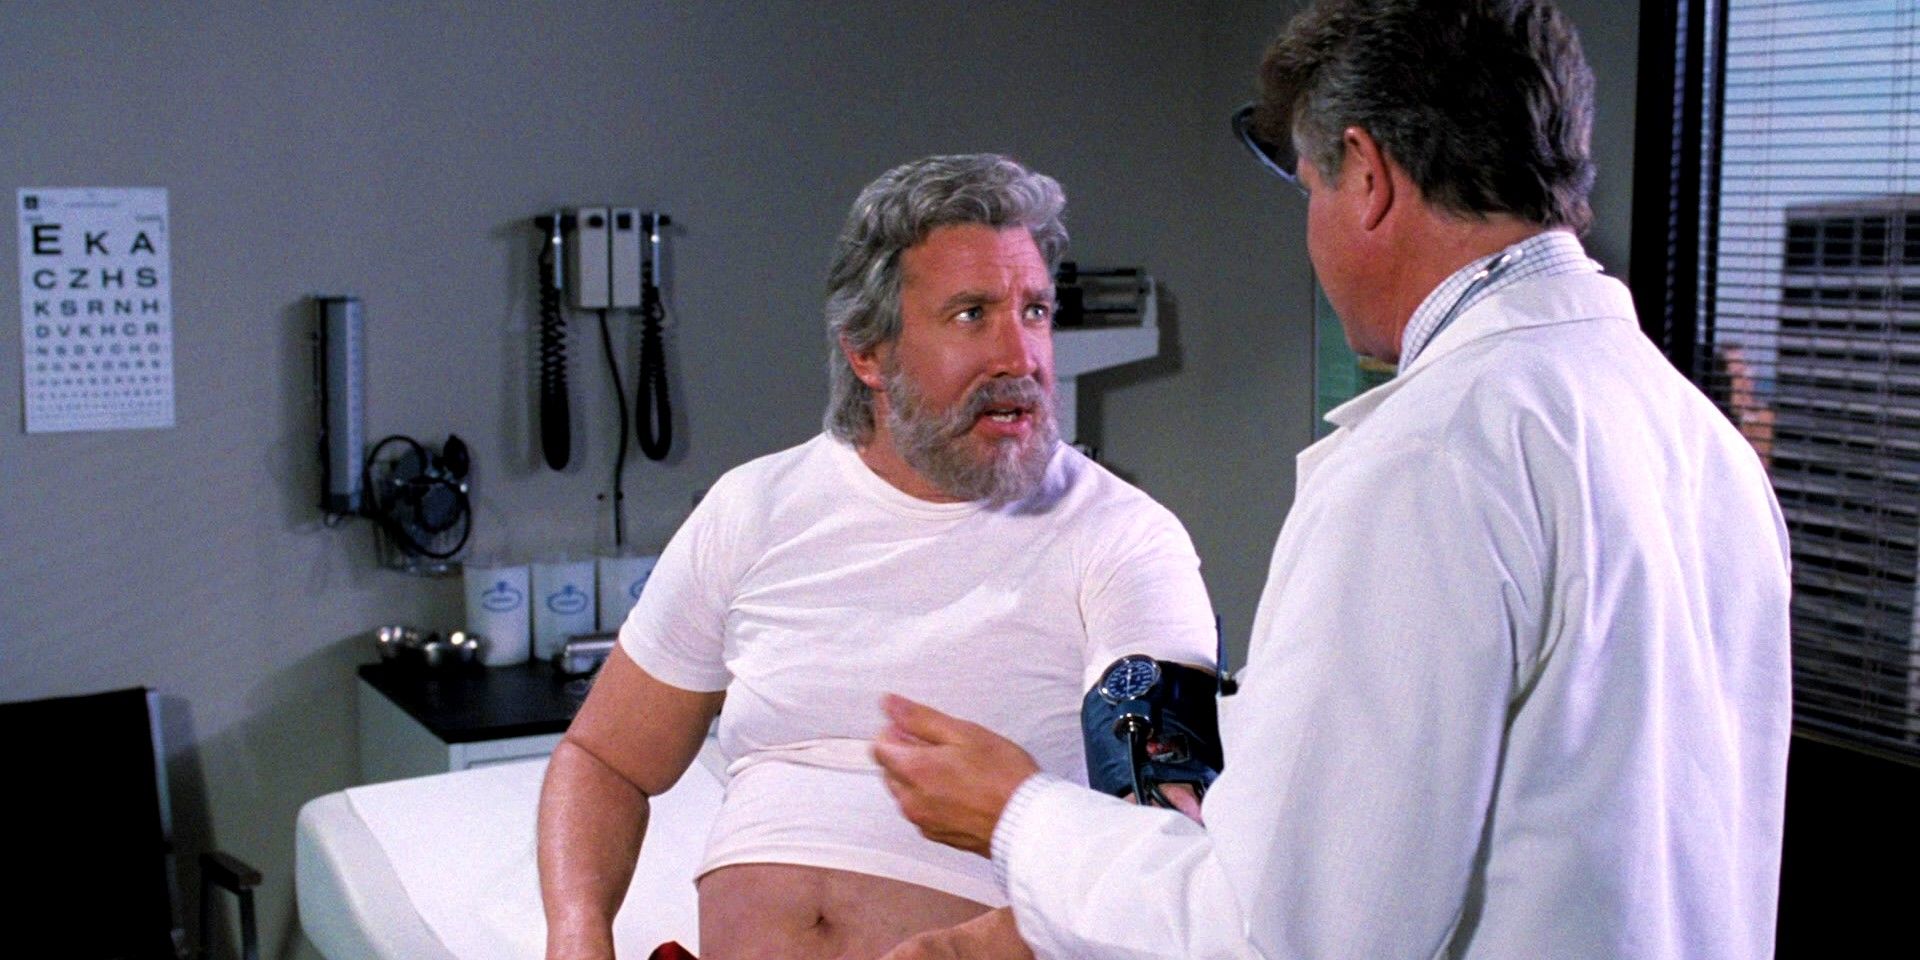 “Por favor, obtenga una estadística de electrocardiograma”: el chequeo médico de Scott Calvin en Santa Claus fue brutalmente desmantelado por un verdadero experto médico